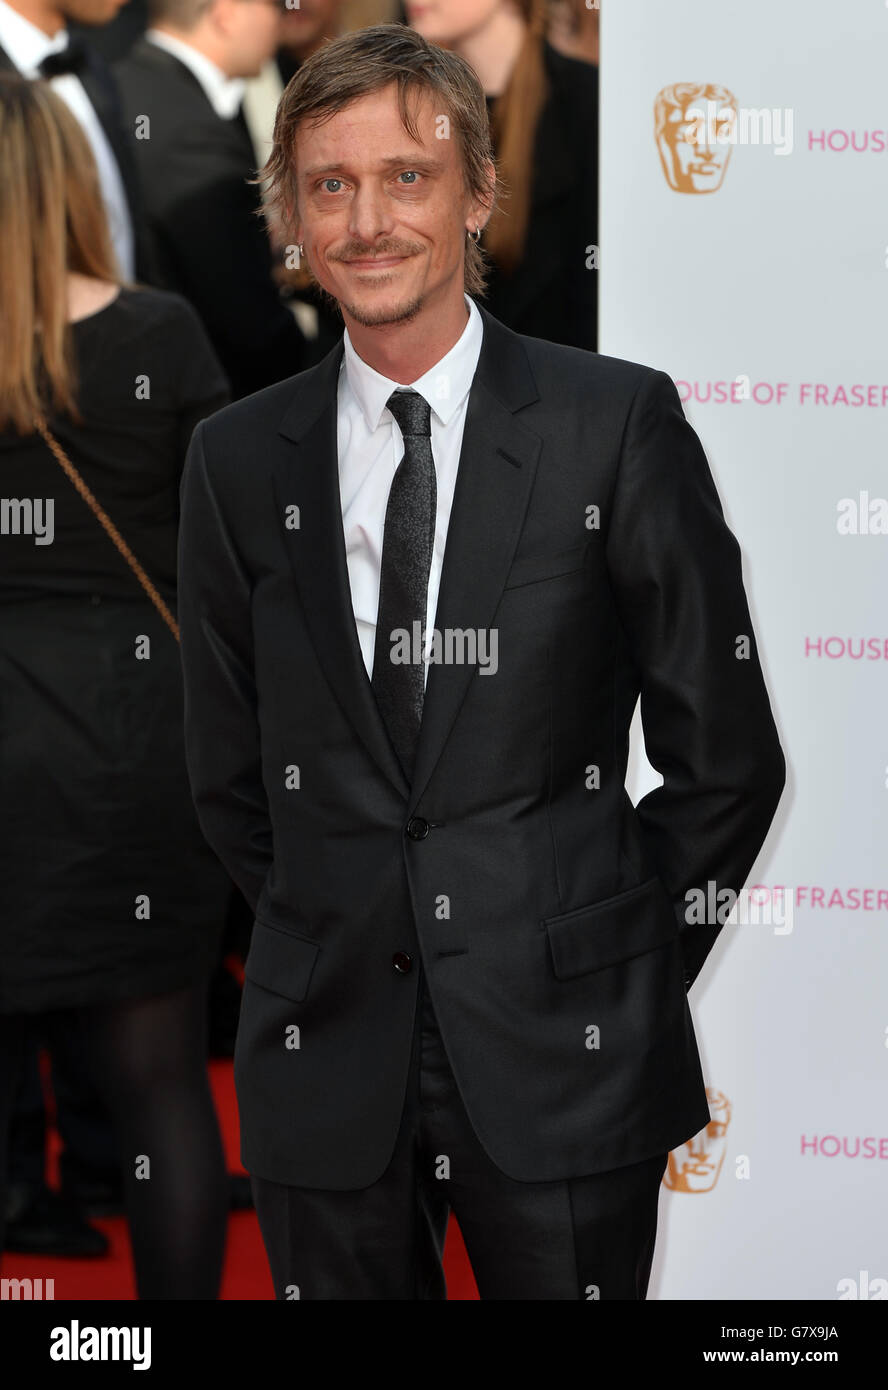 Mackenzie Crook kommt für die House of Fraser British Academy of Television Awards im Theatre Royal, Drury Lane in London an. Stockfoto